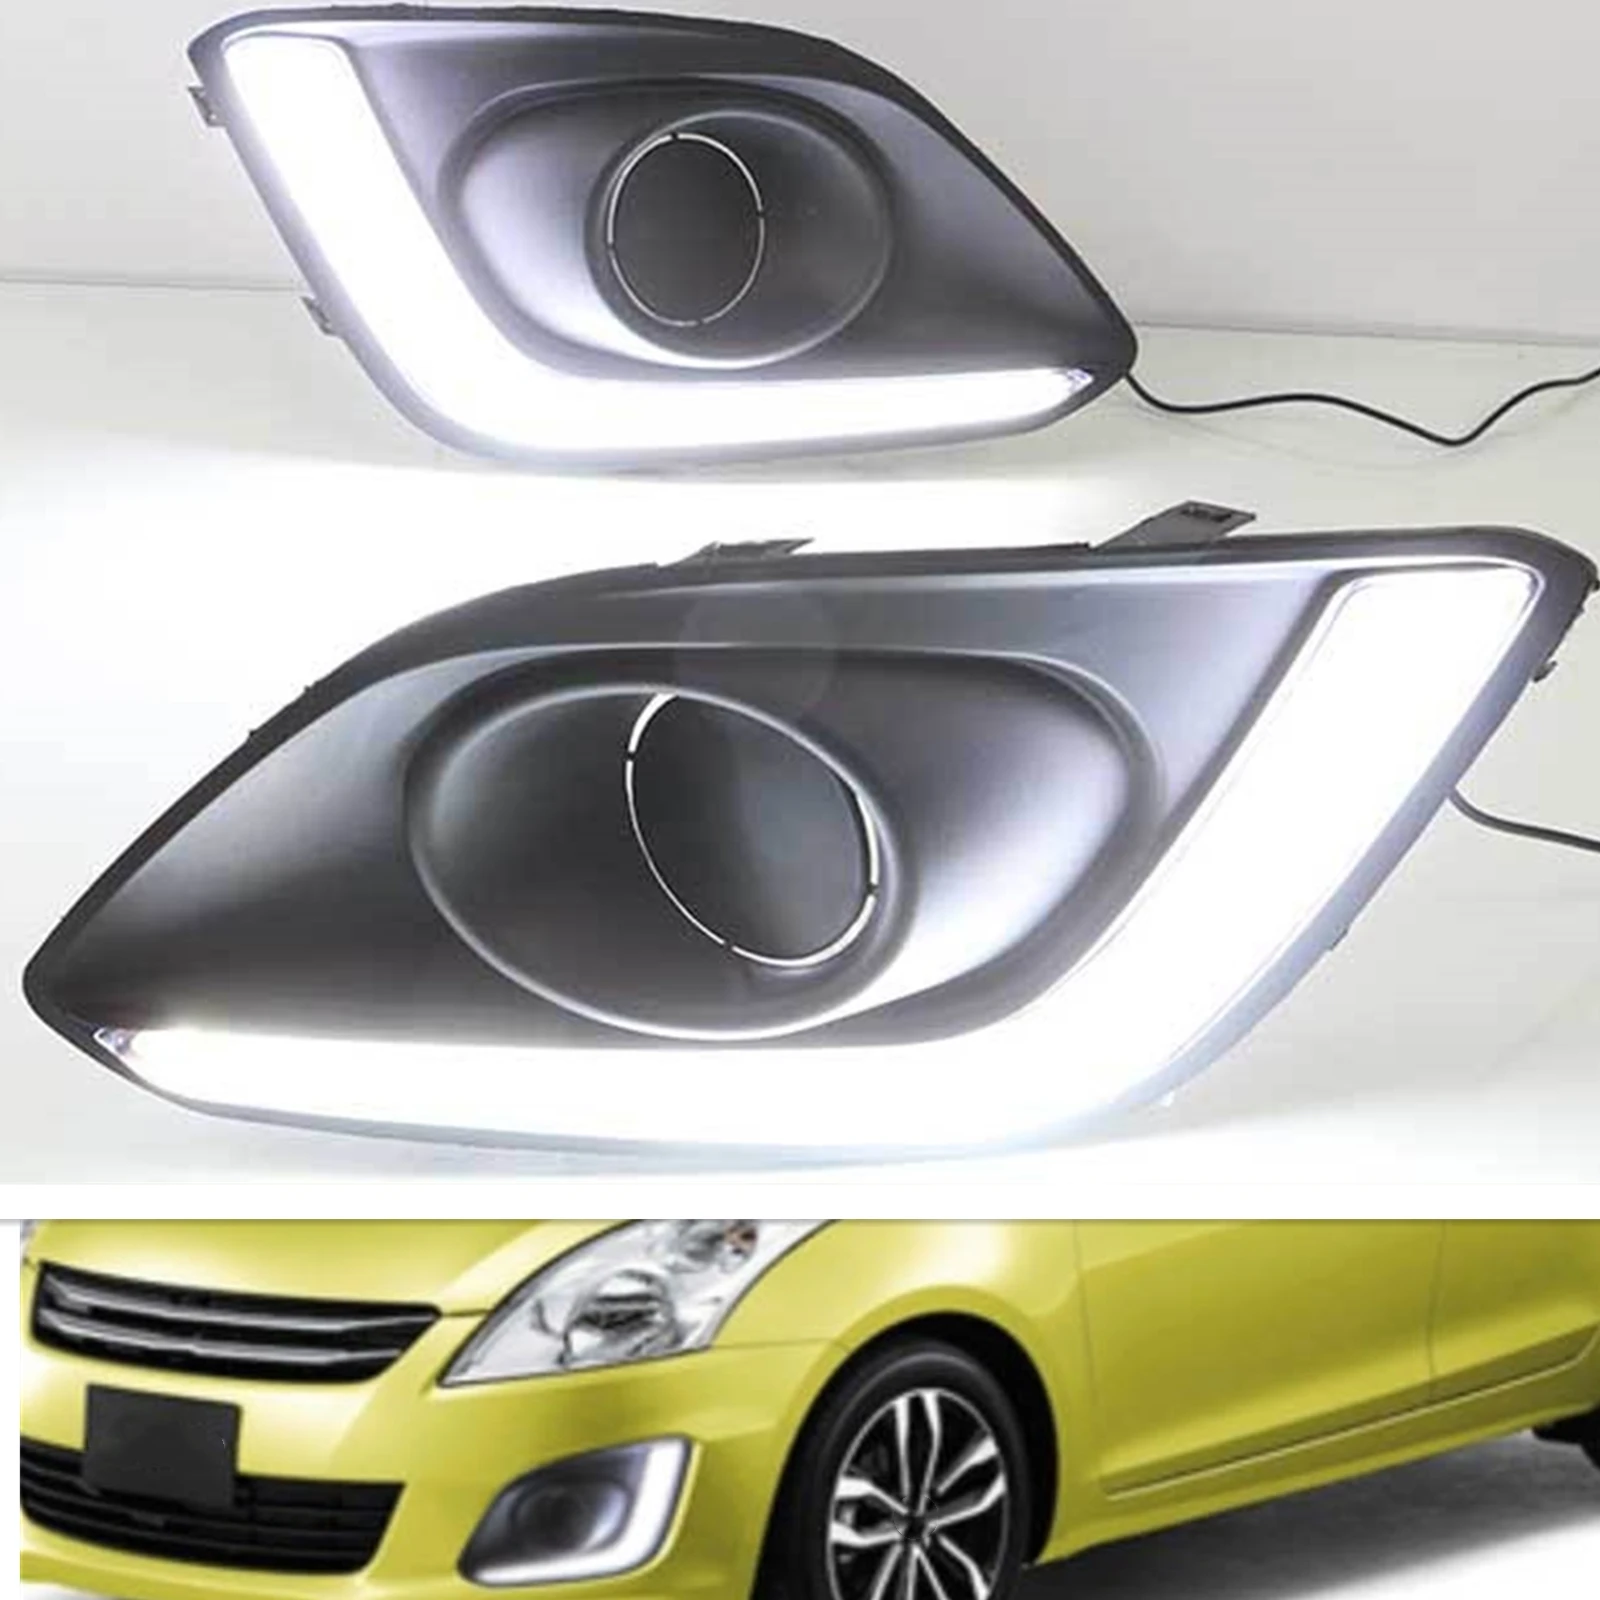 

LED Daytime Running Lamp Front Bumper Fog Light Drive Fender Side Turn Signal Indicator Bulb For Suzuki Swift 2014-2017